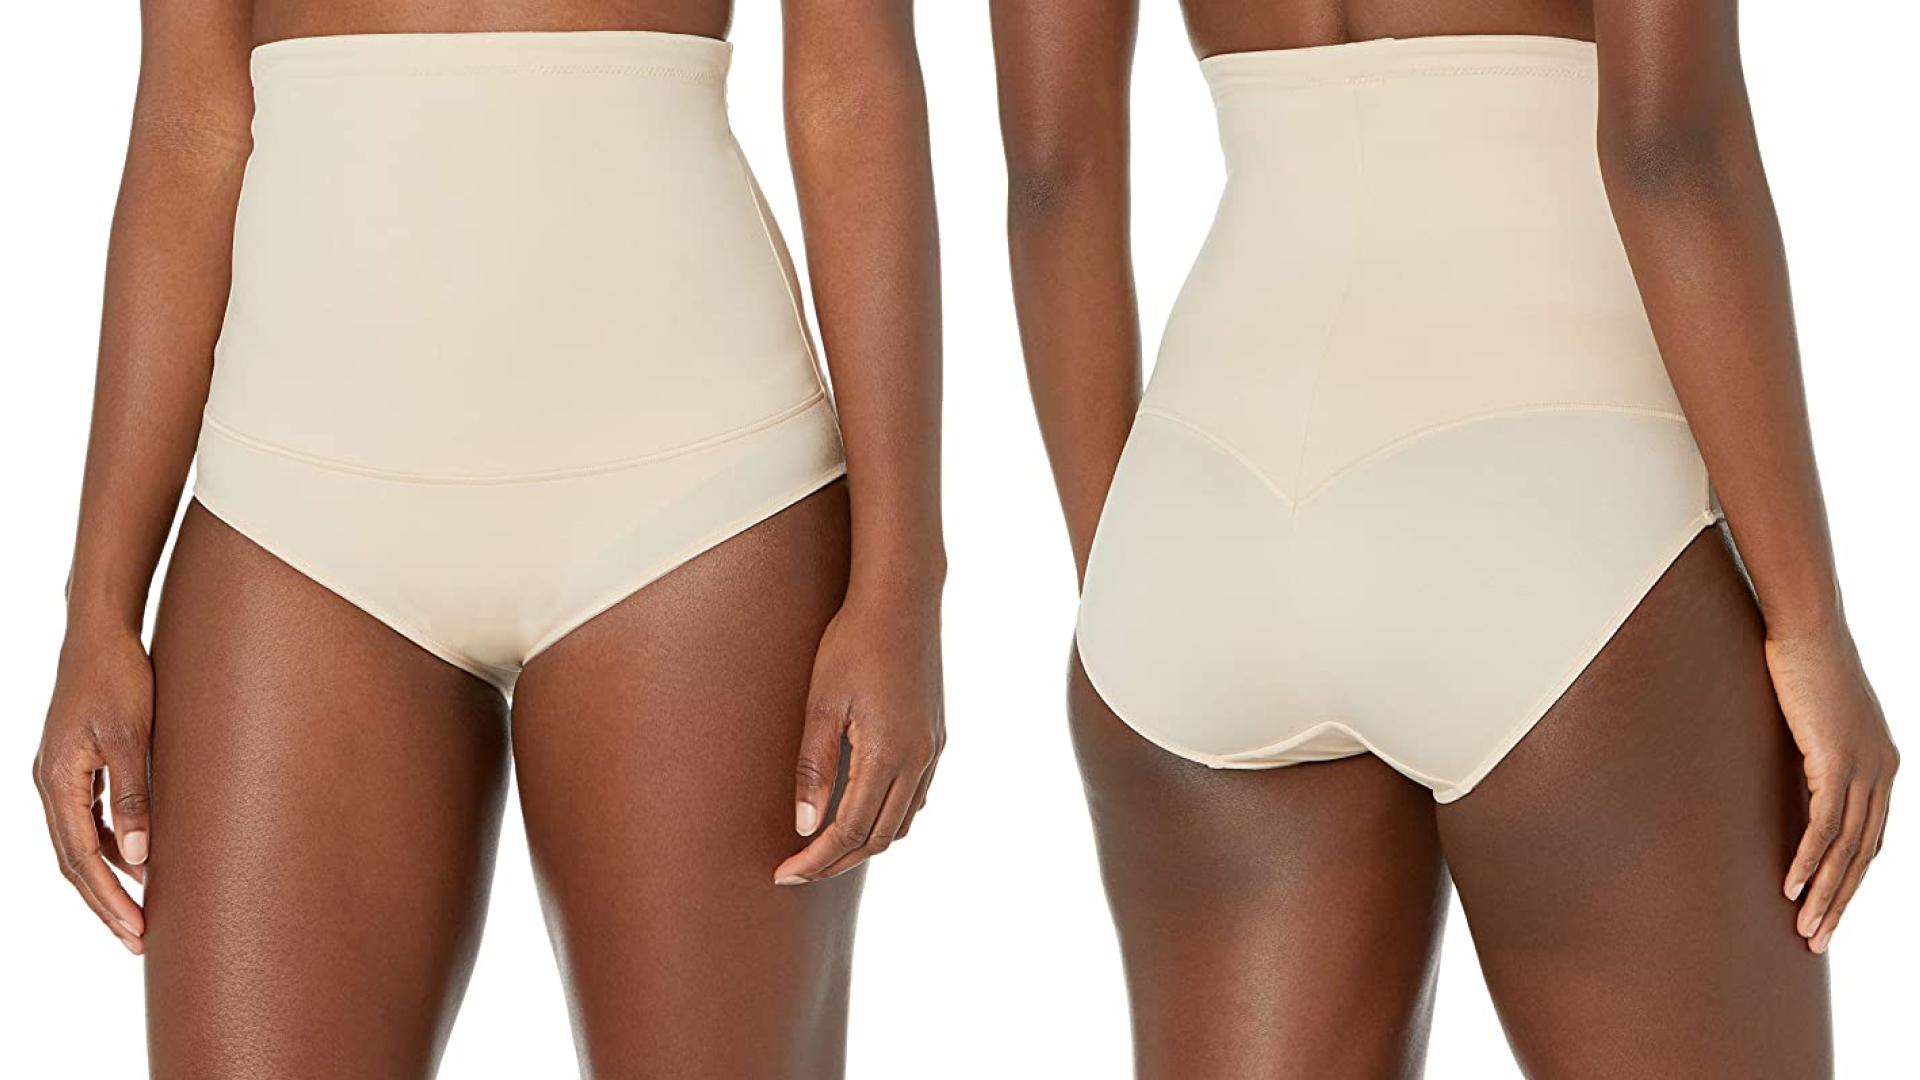 High waist tummy control underwear for women autumn and winter